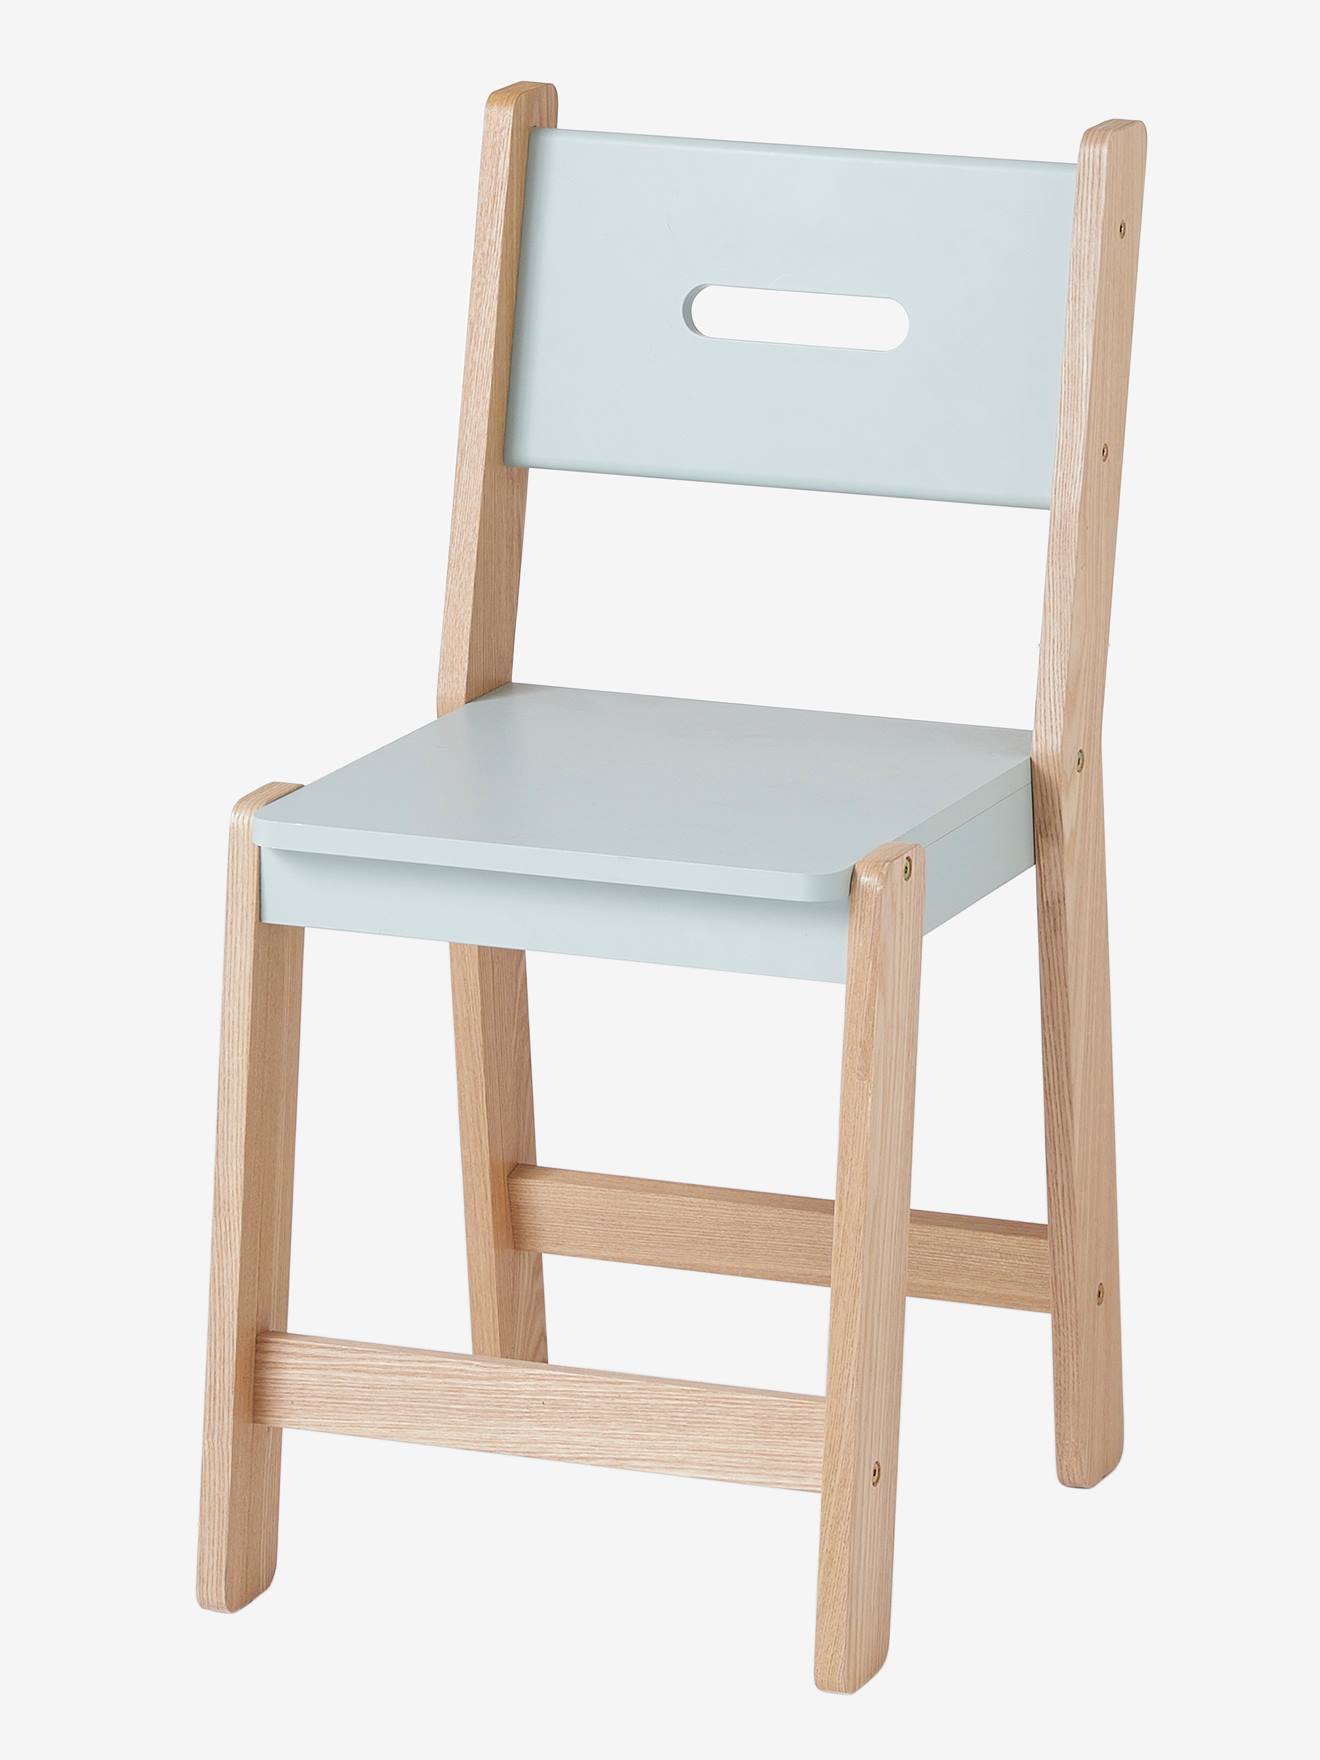 https://media.vertbaudet.be/Pictures/vertbaudet/214196/chaise-enfant-assise-h-45-cm-ligne-architekt.jpg